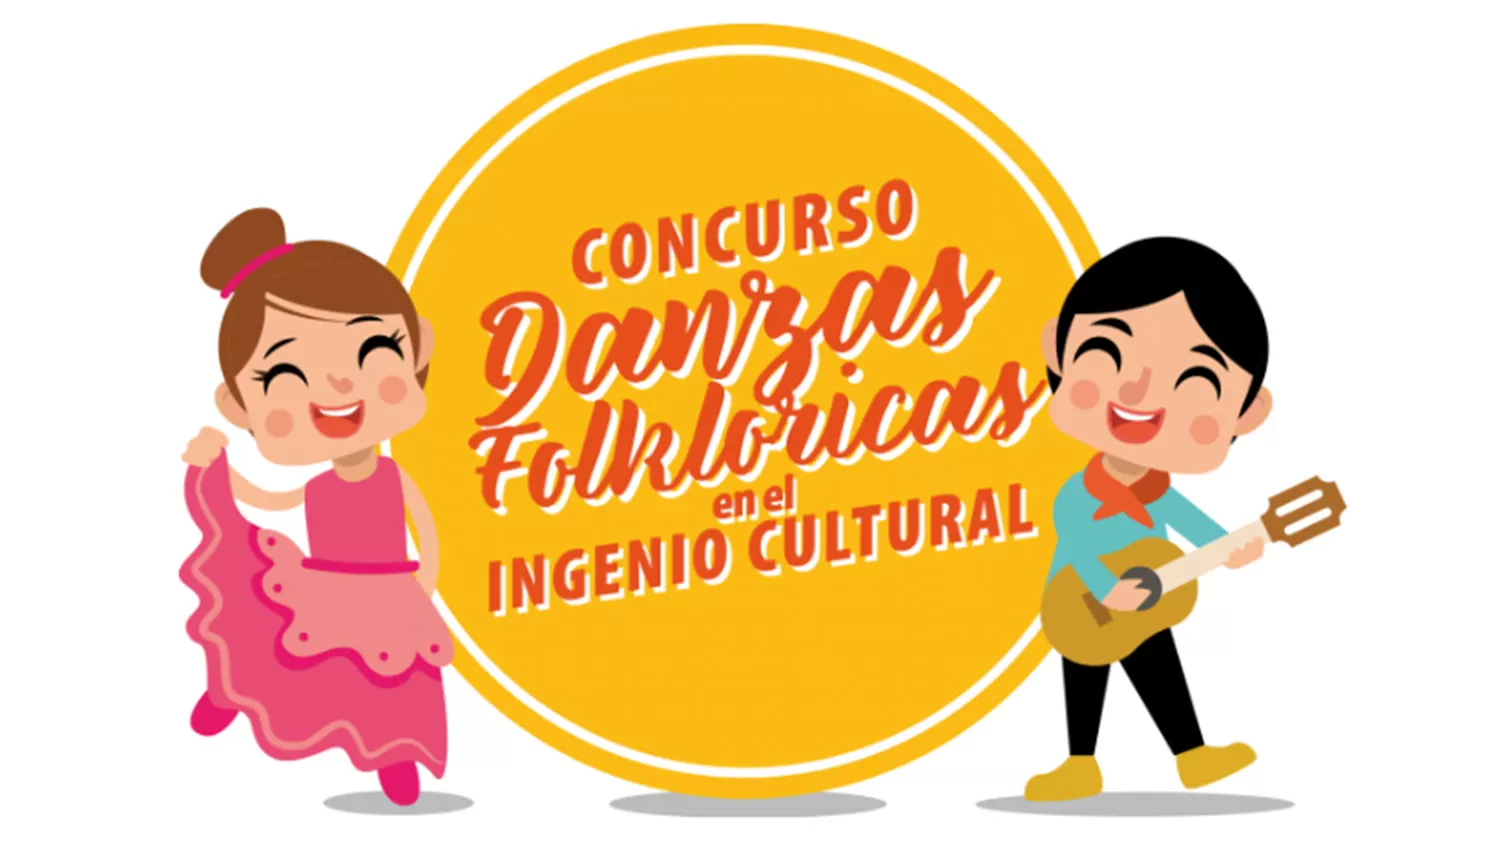 El ingeniero cultural organiza un concurso de danzas folclóricas para las academias